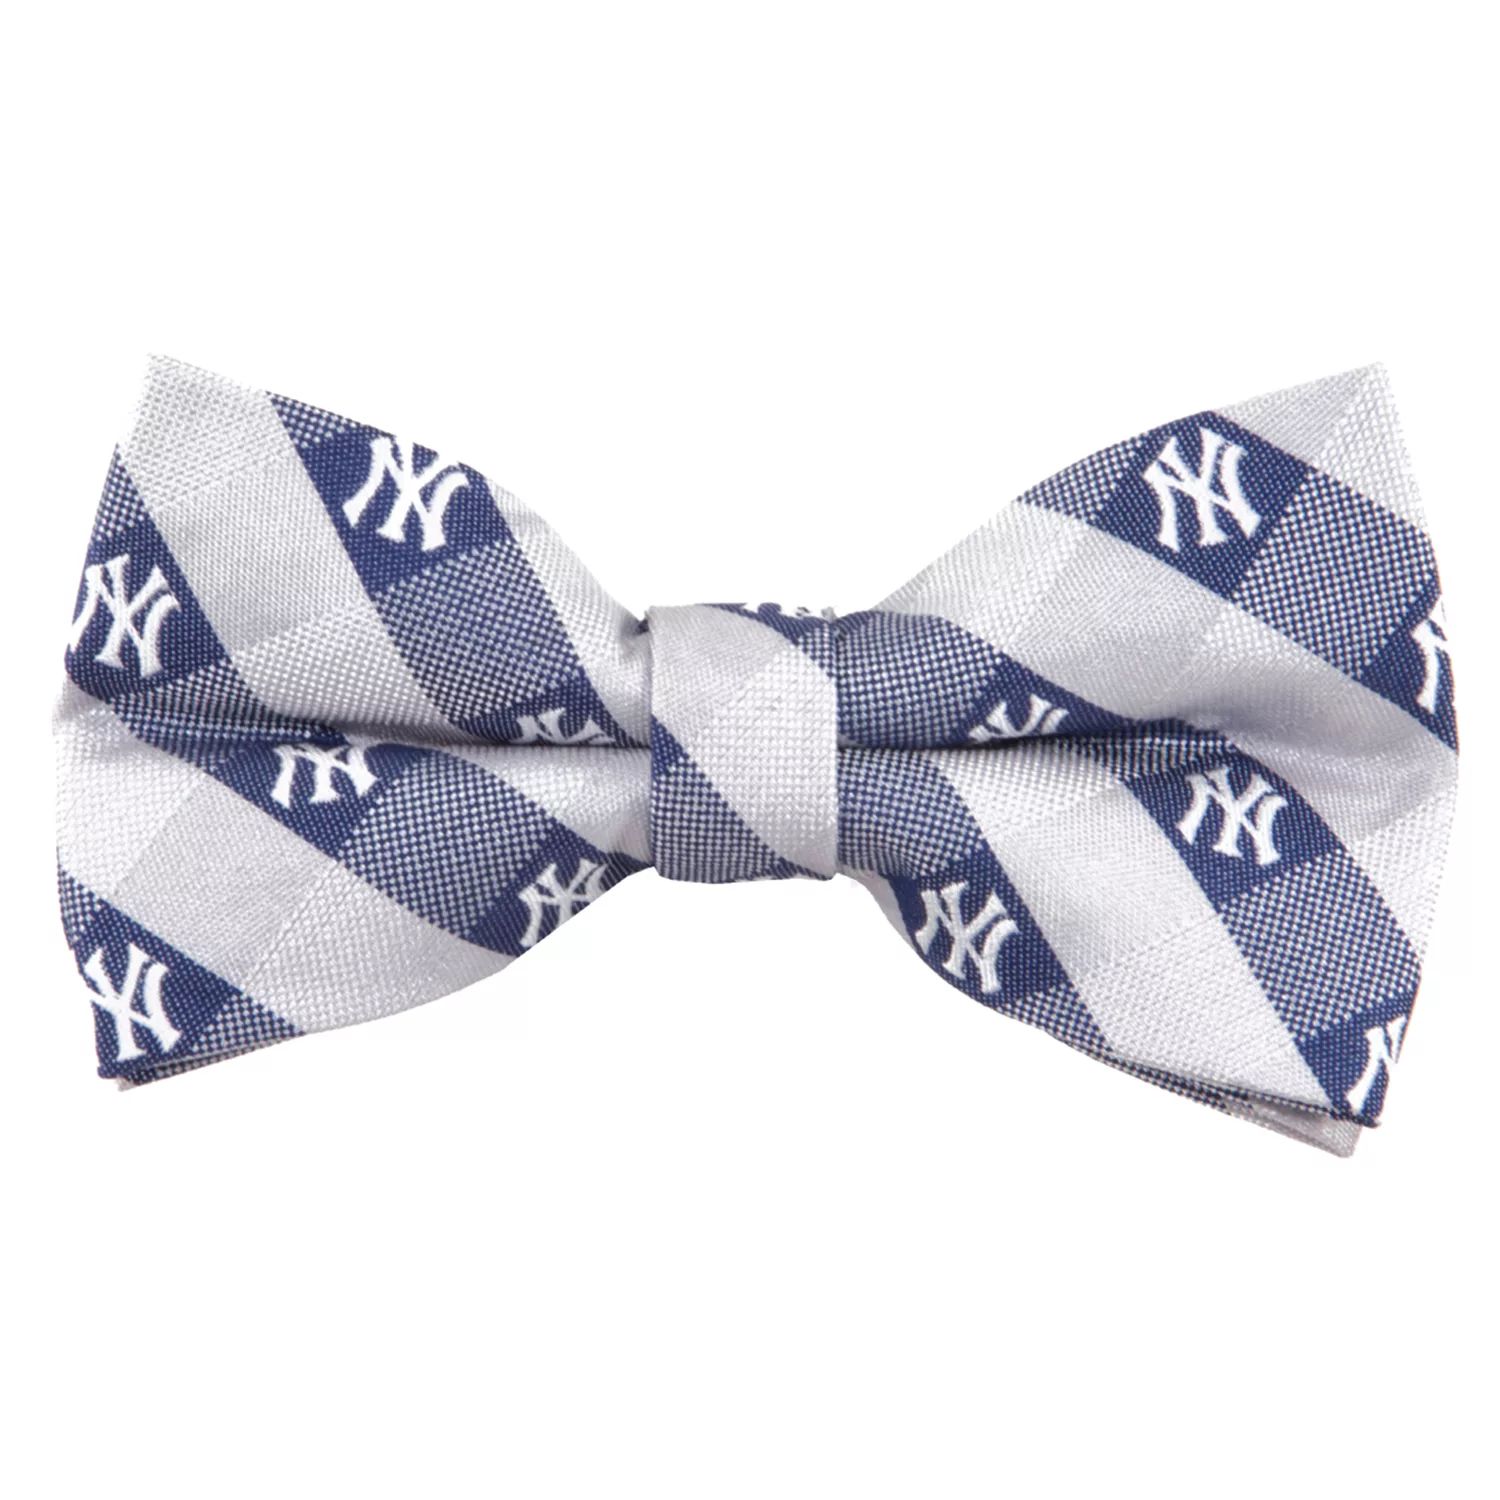 Тканый галстук-бабочка в клетку «Нью-Йорк Янкиз»